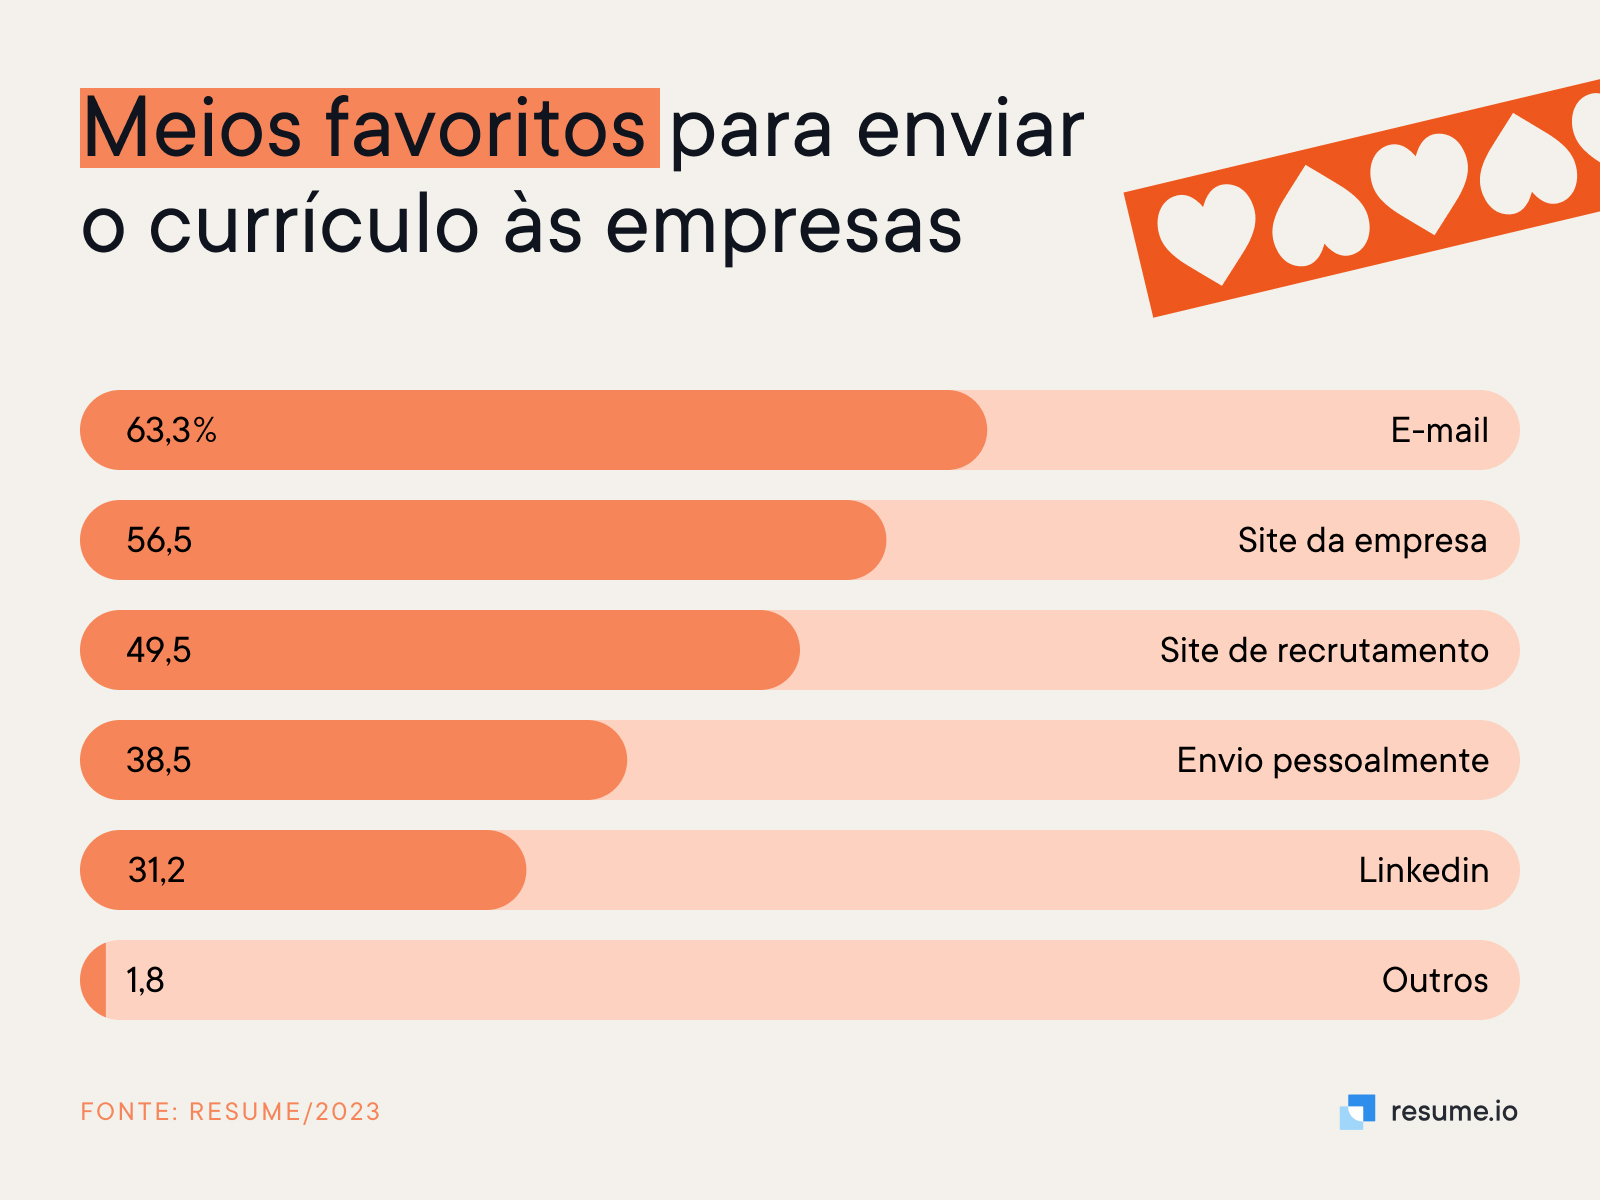 63% das pessoas acham que e-mail é o meio favorito para enviar currículo às empresas